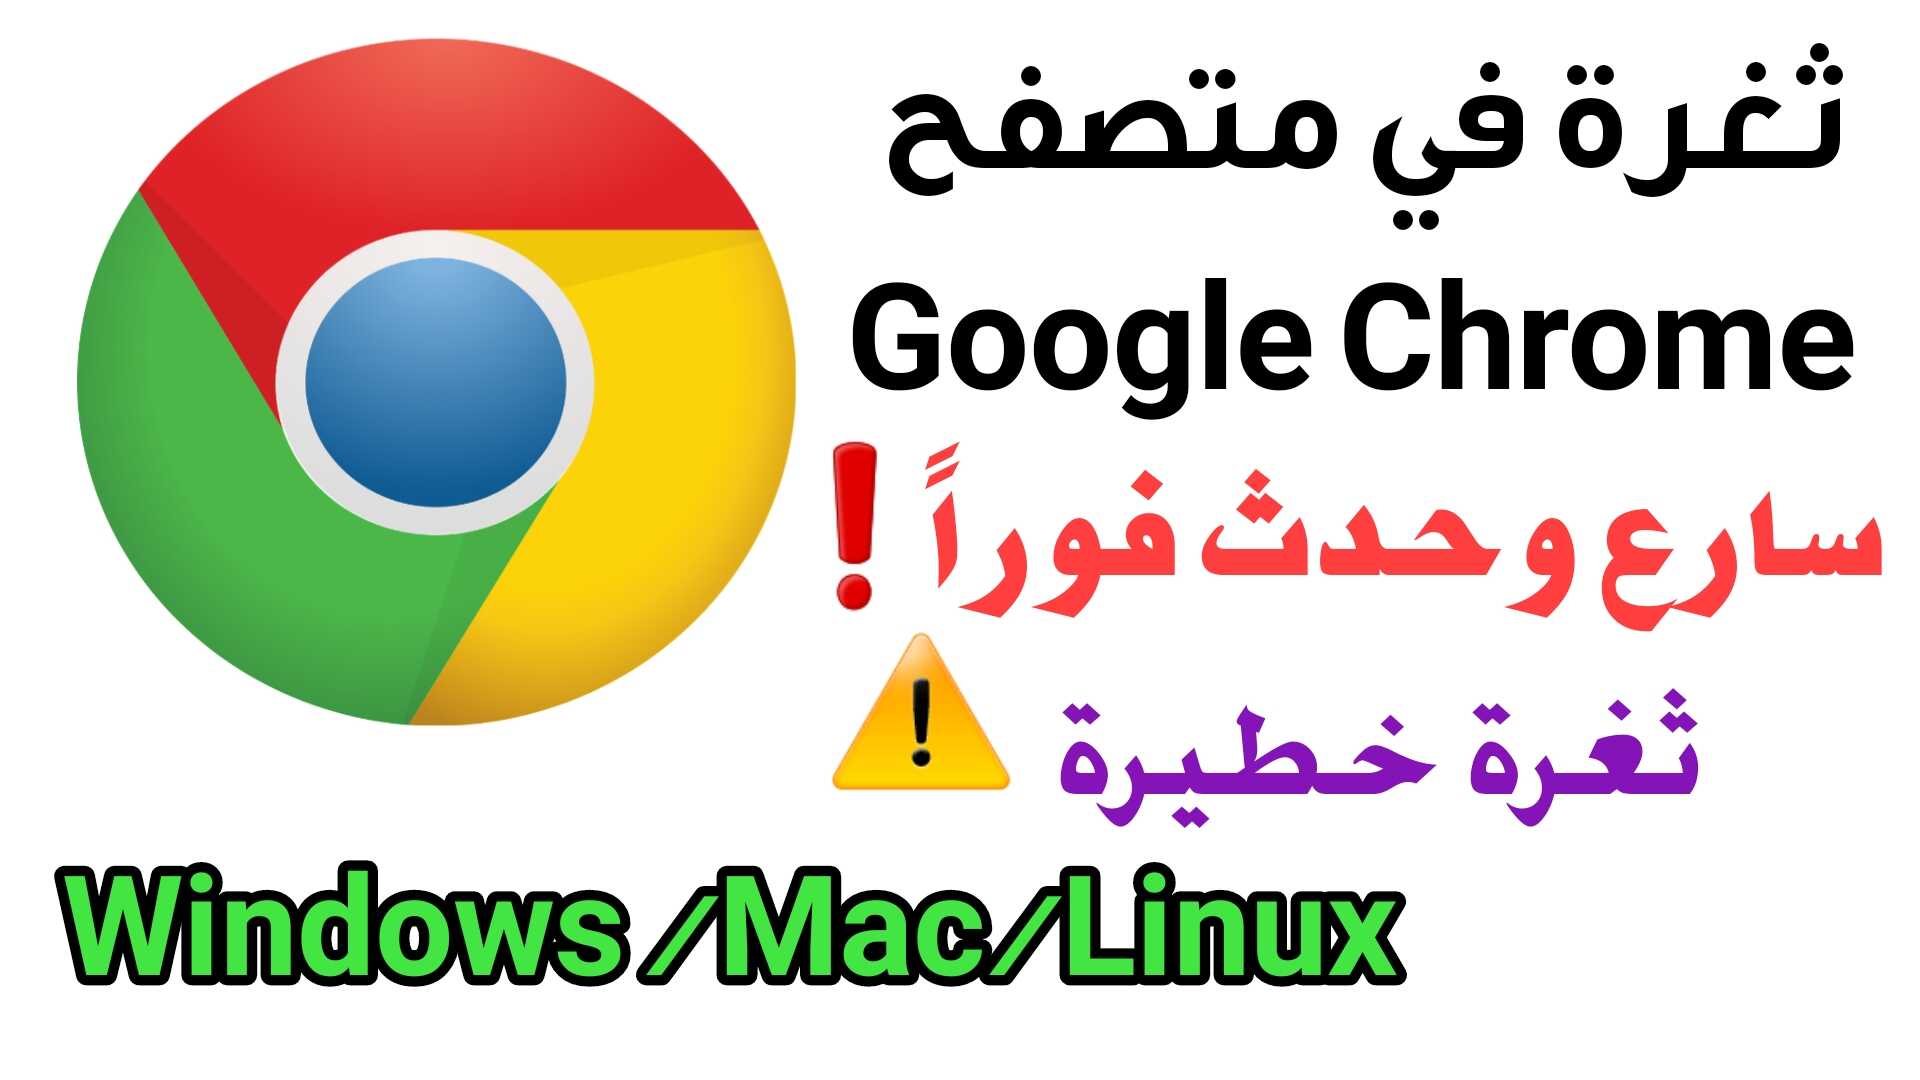 ثغرة في Google Chrome سارع وحدث المتصفح على Windows /Mac/Linux